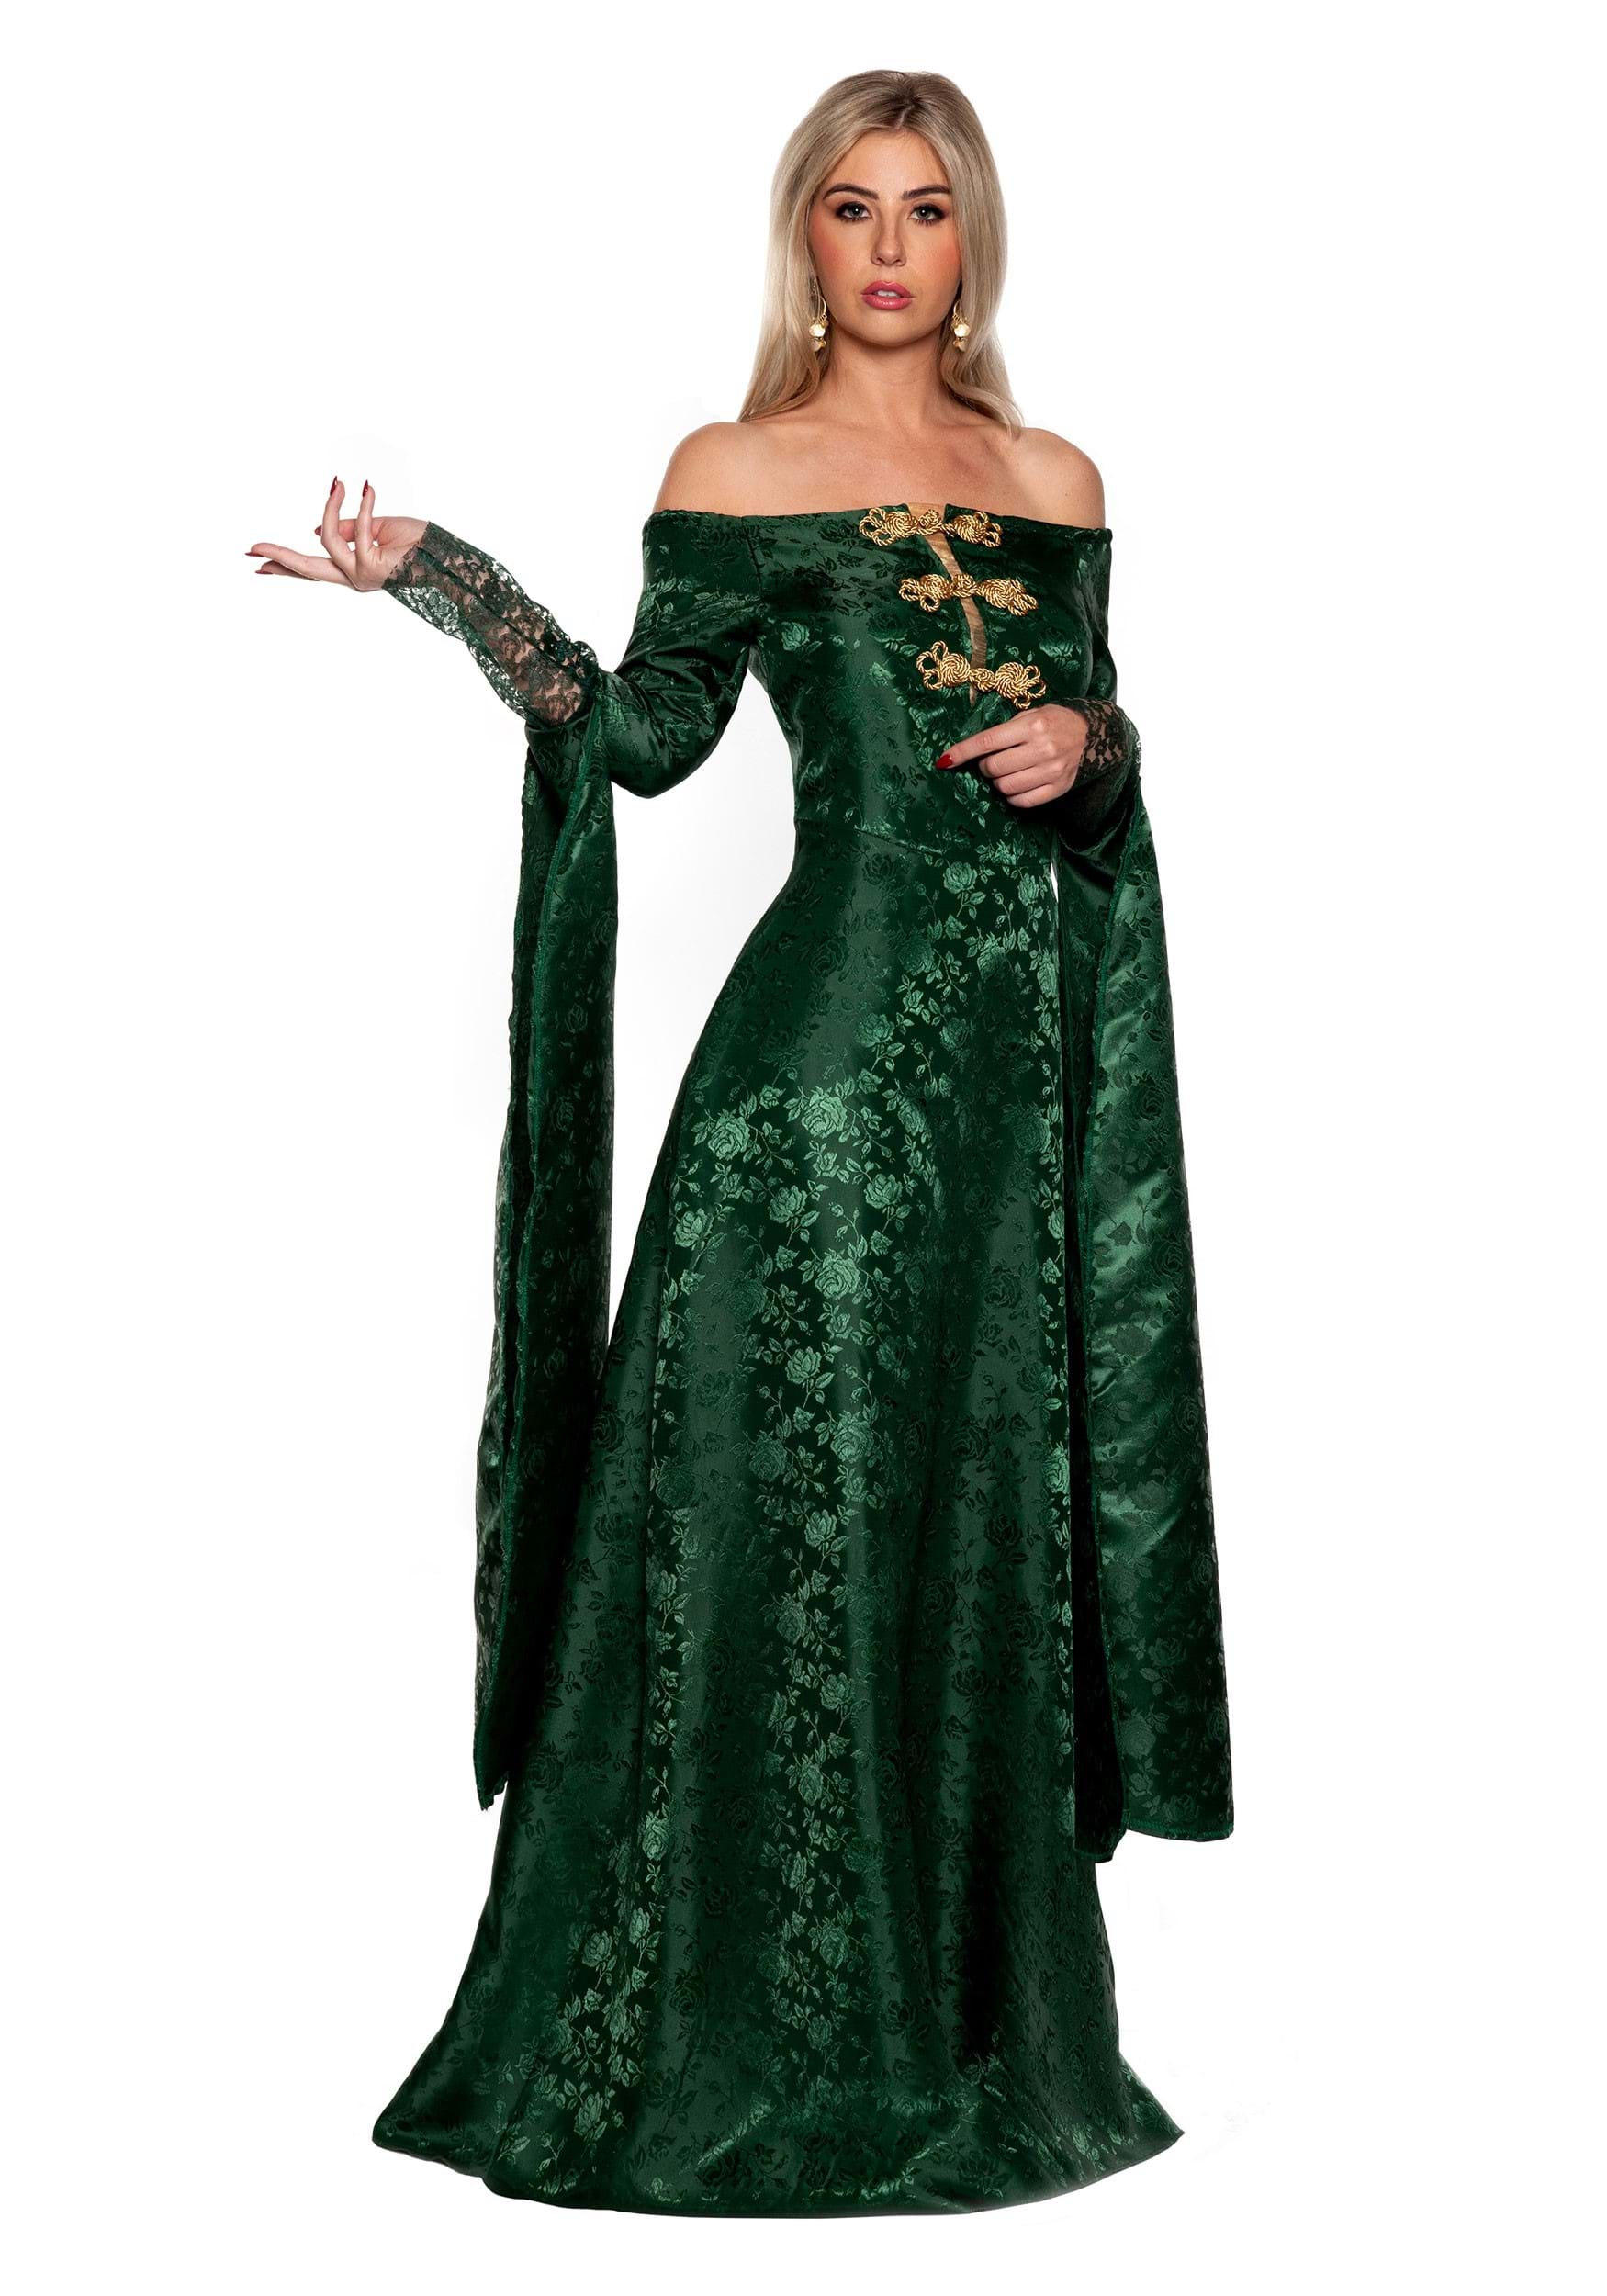 Green Renaissance Queen Fancy Dress Costume For Women